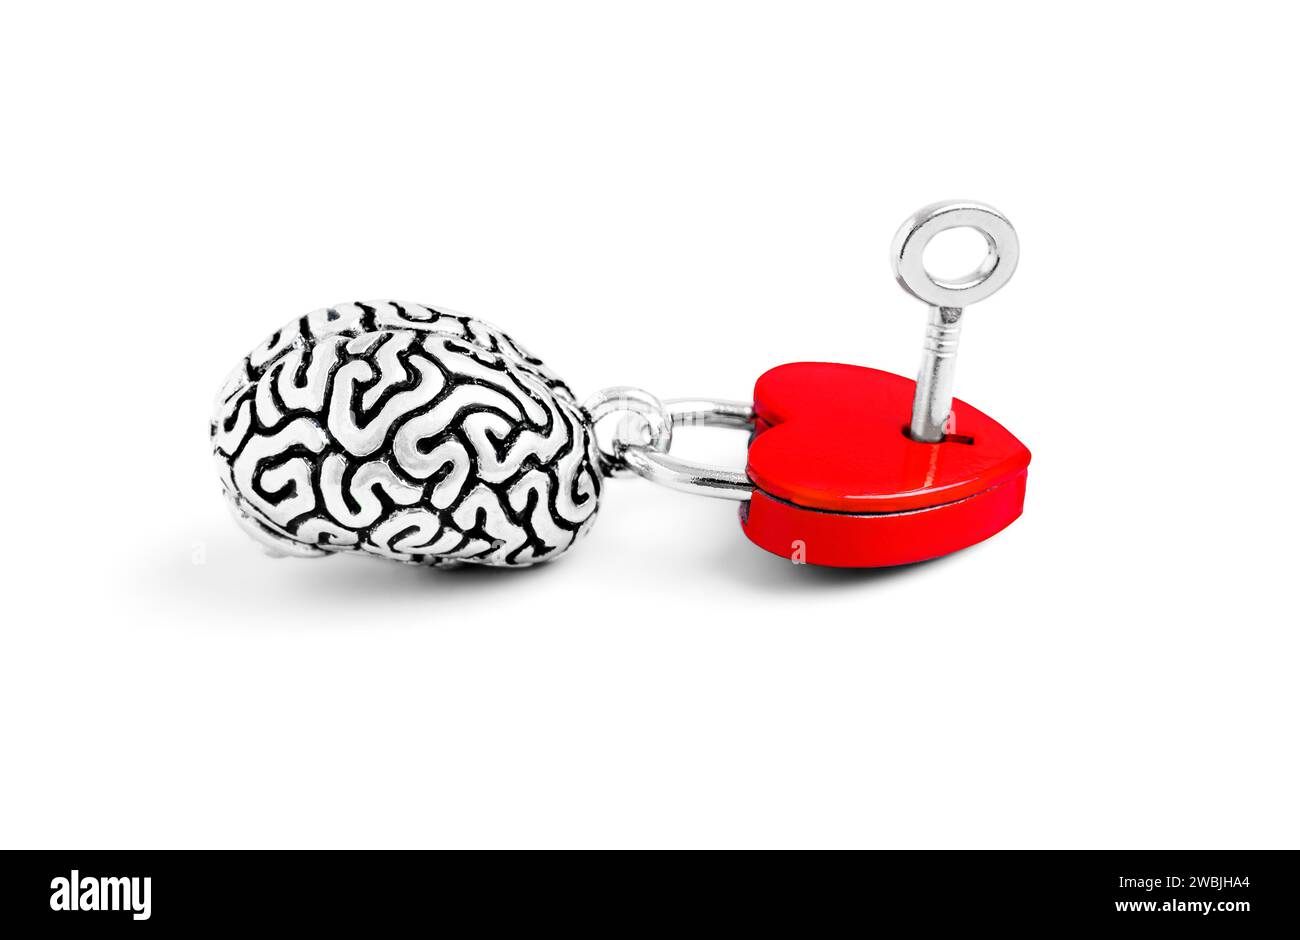 Il modello dettagliato del cervello umano si intreccia elegantemente con un lucchetto a forma di cuore, adornato da una chiave isolata su sfondo bianco. Equilibrio tra intelle Foto Stock